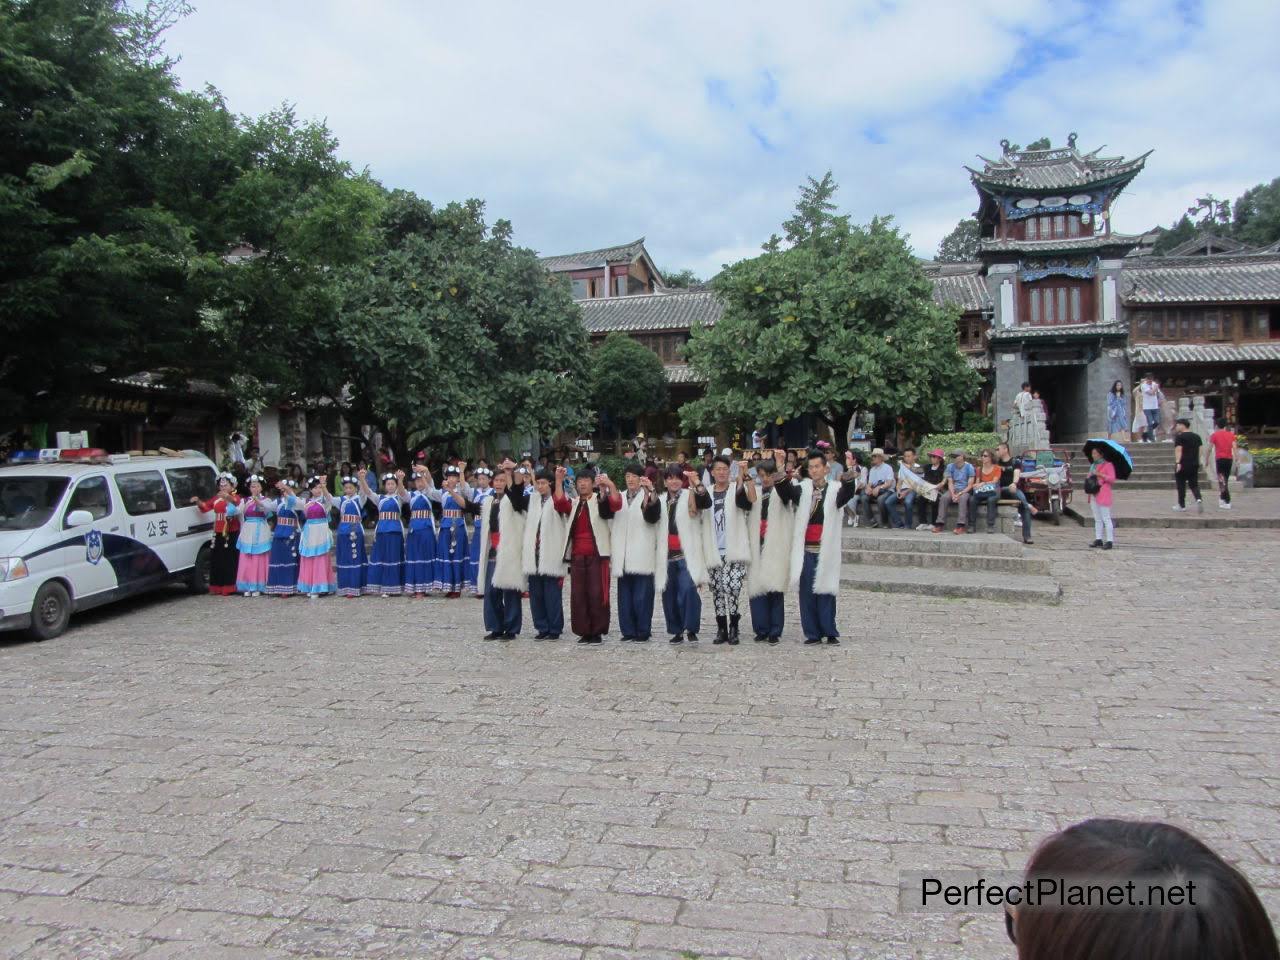 Traditional dances in Lijiang